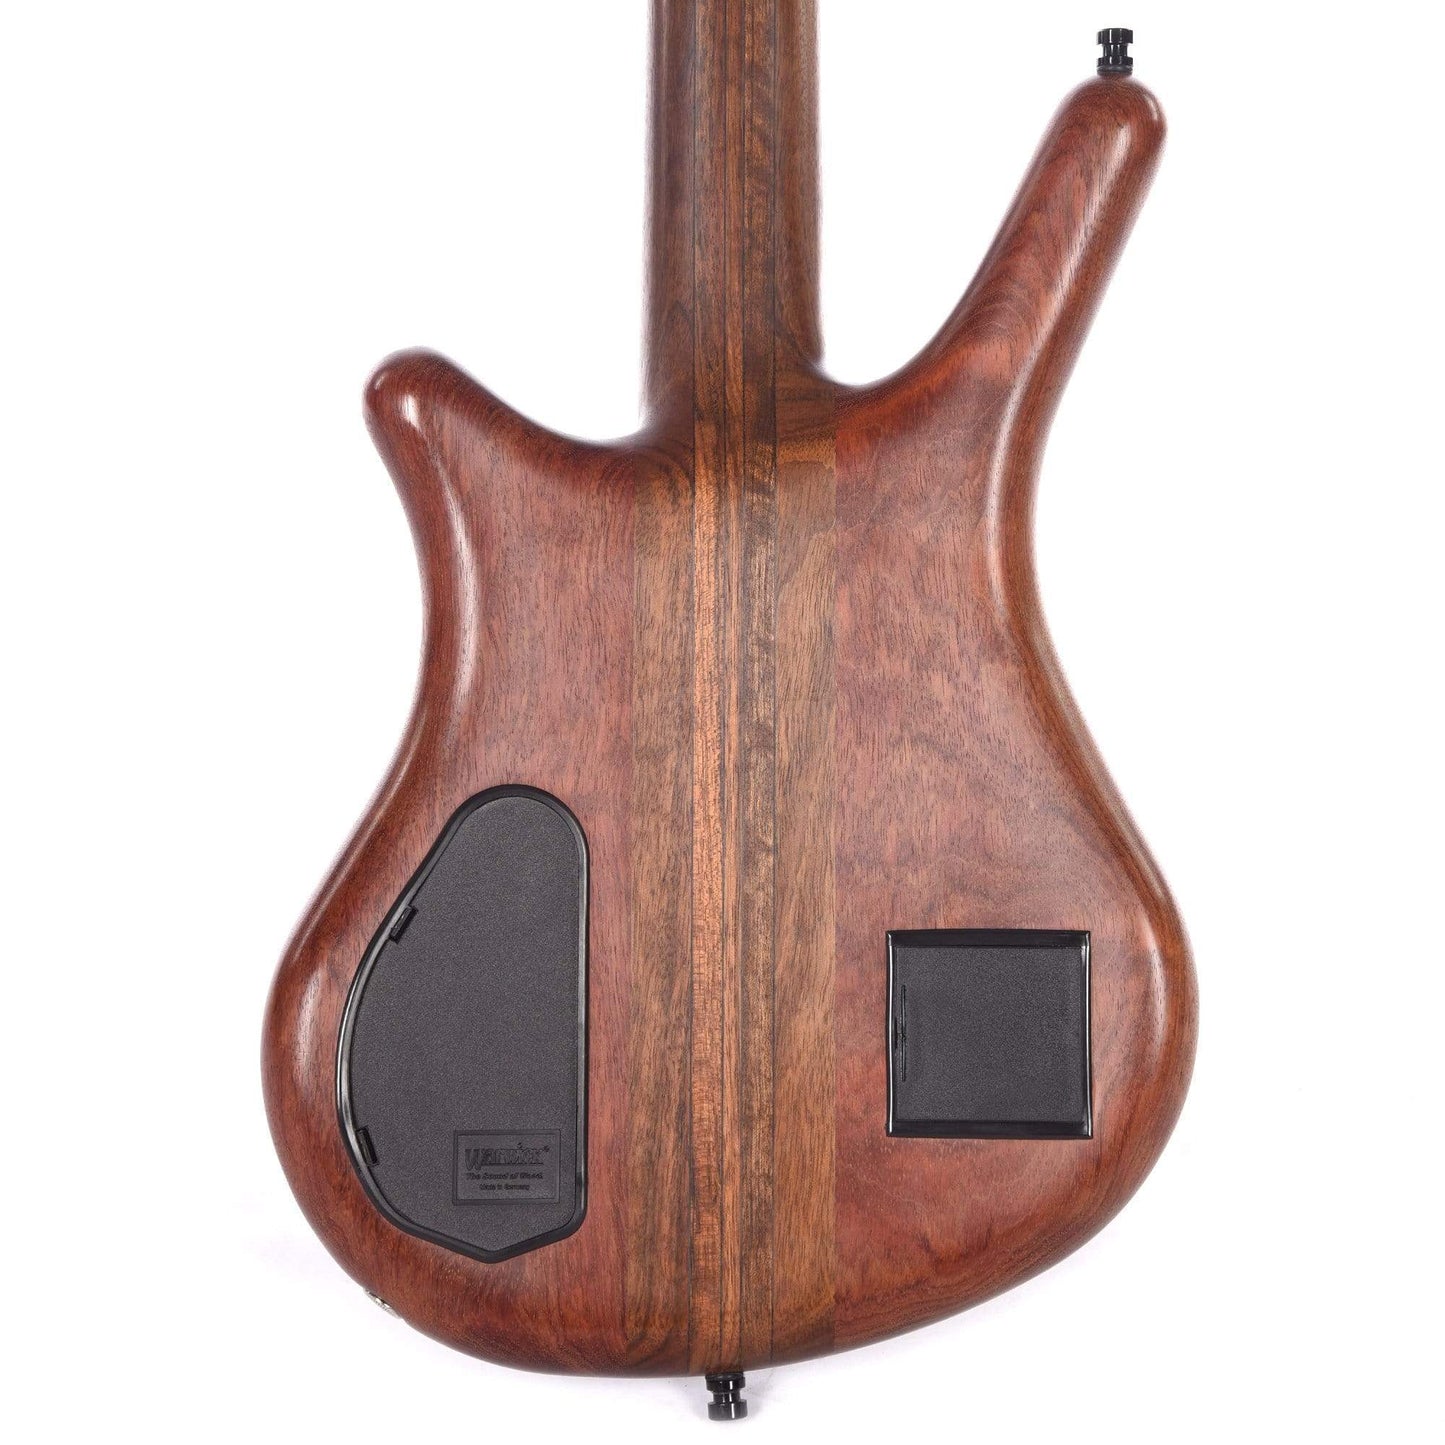 Warwick Jack Bruce Thumb Ltd. W/Signature Inlay Bass Guitars / 4-String